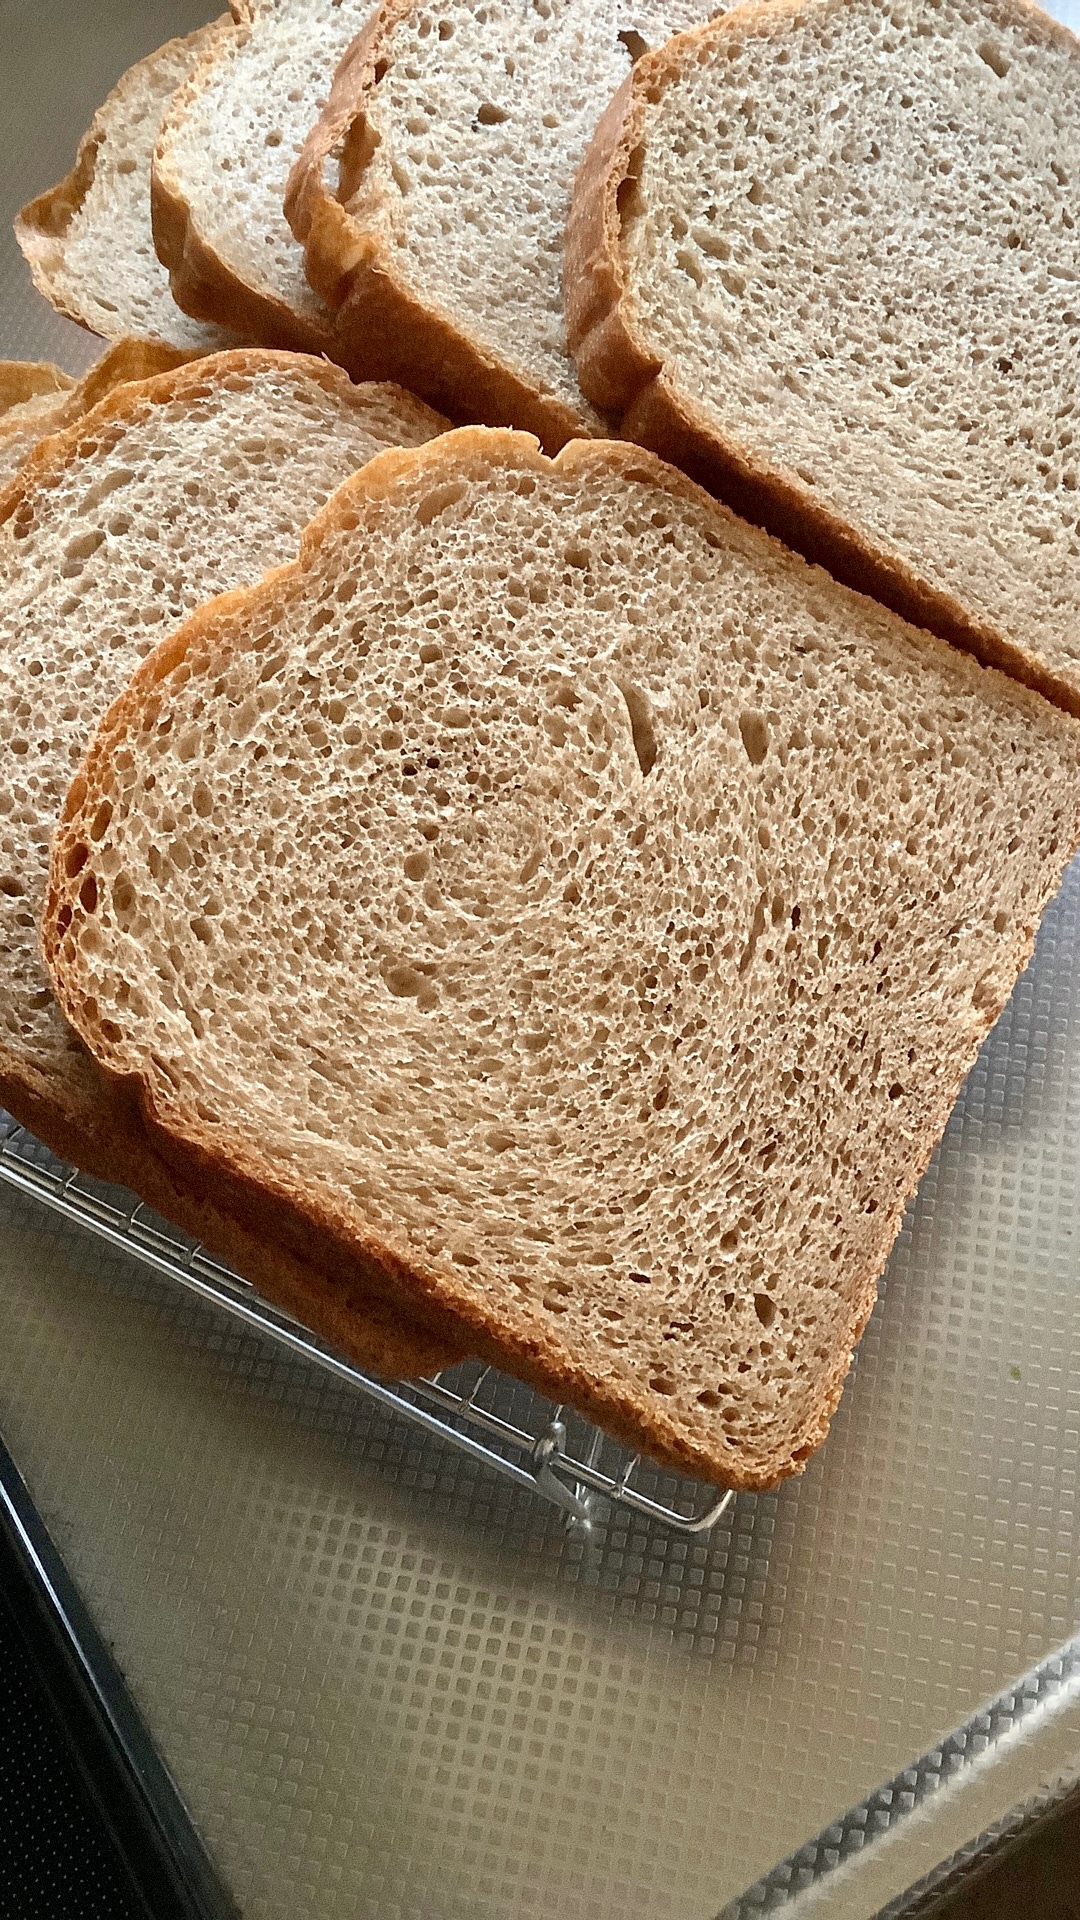 ホームベーカリーで100%全粒粉の湯種食パン